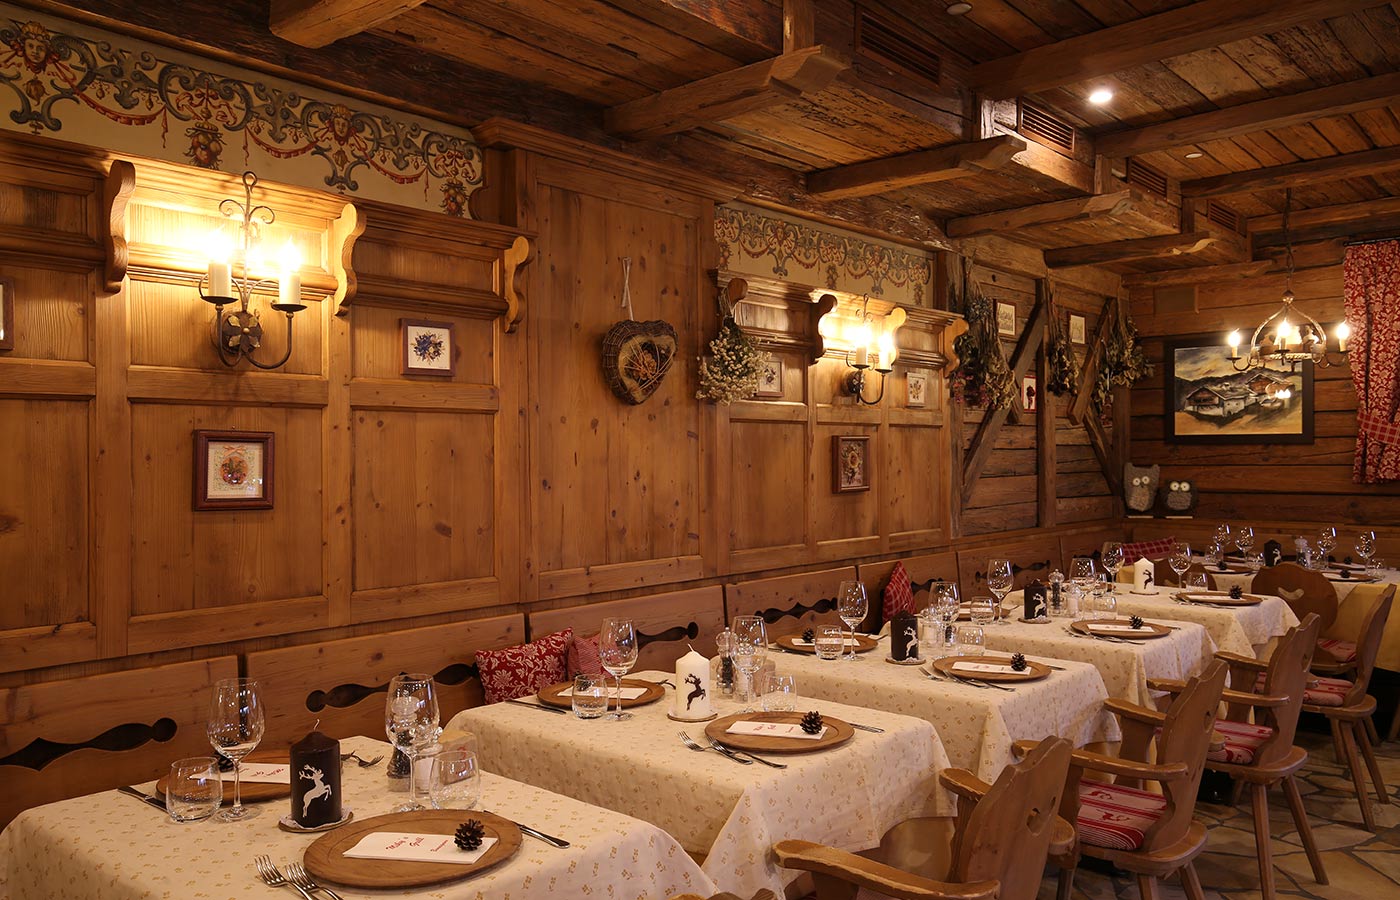 Tavoli apparecchiati nella sala da pranzo in legno del ristorante rustico Miky's Grill